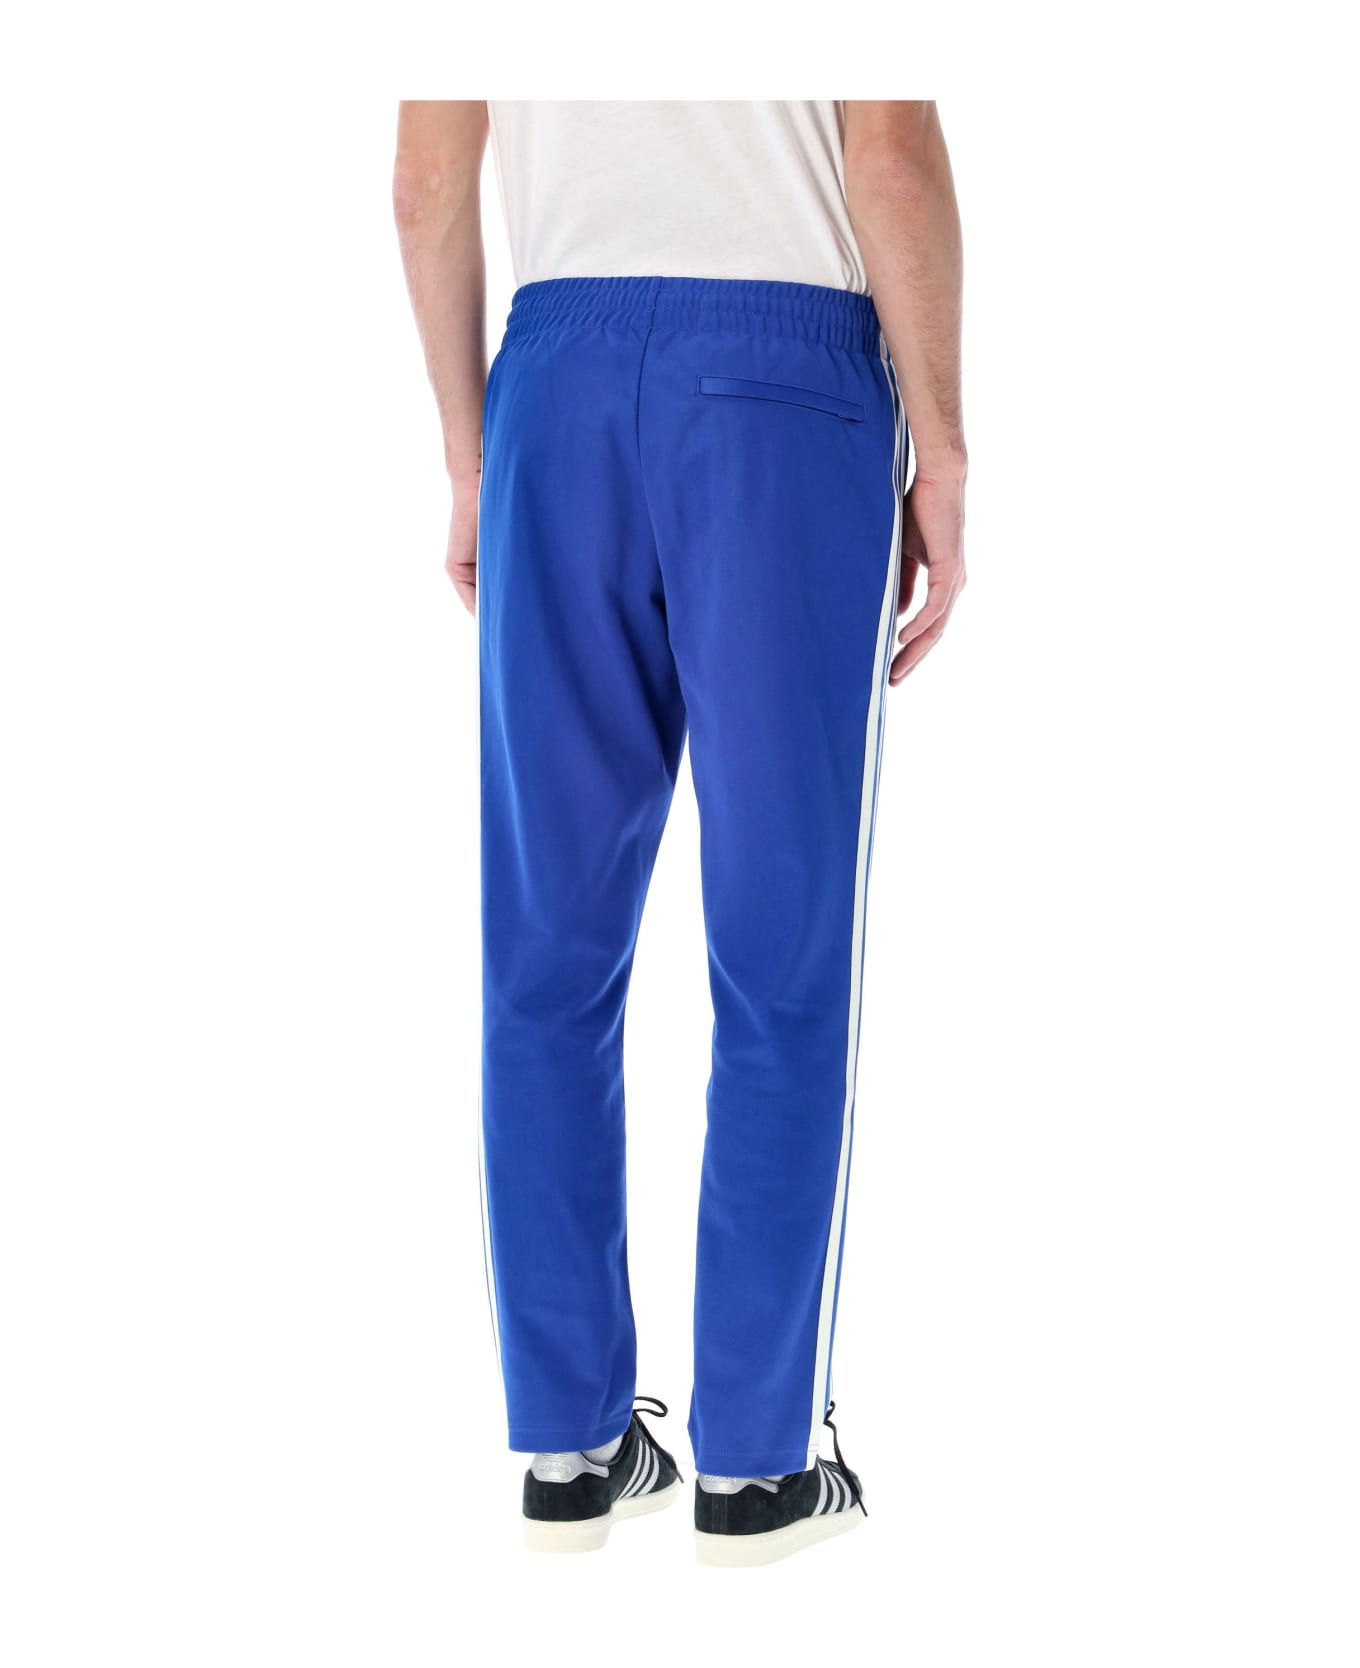 Adidas Originals Og Track Pants - BLUE